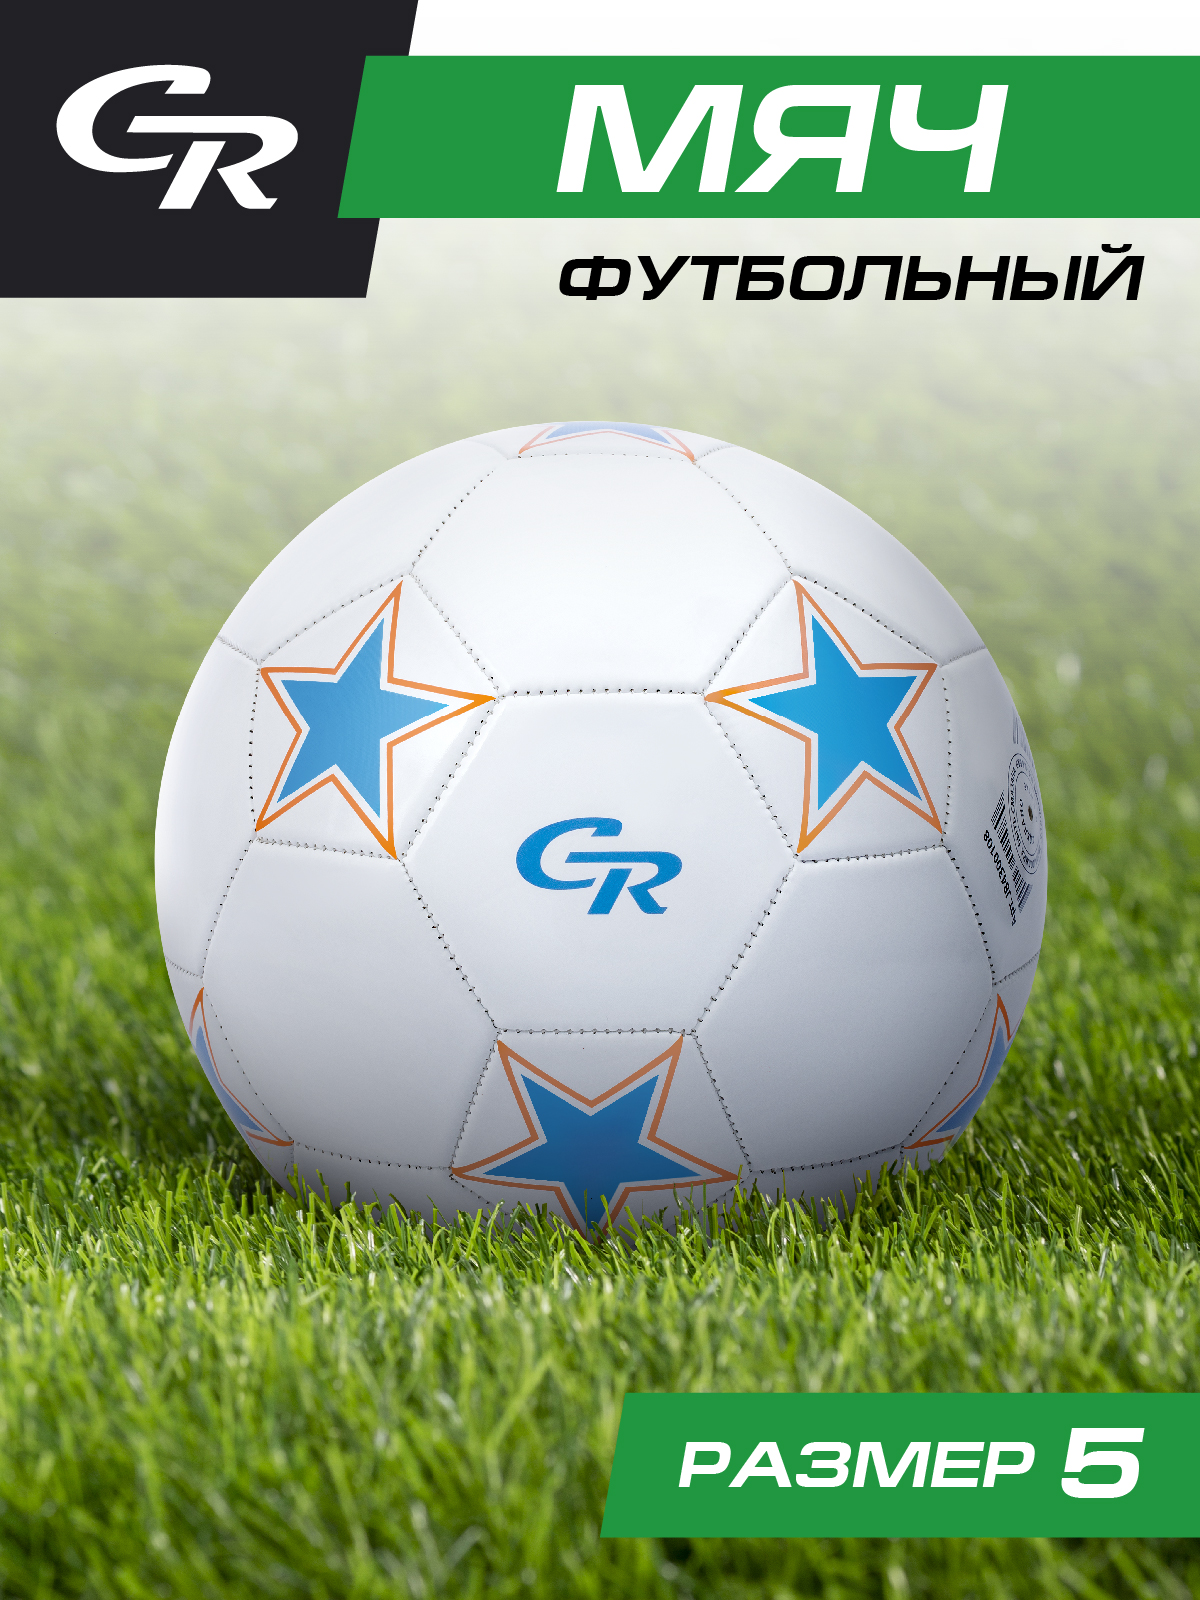 Мяч футбольный ТМ City Ride, 3-слойный, сшитые панели, ПВХ, размер 5, диаметр 22,JB4300108